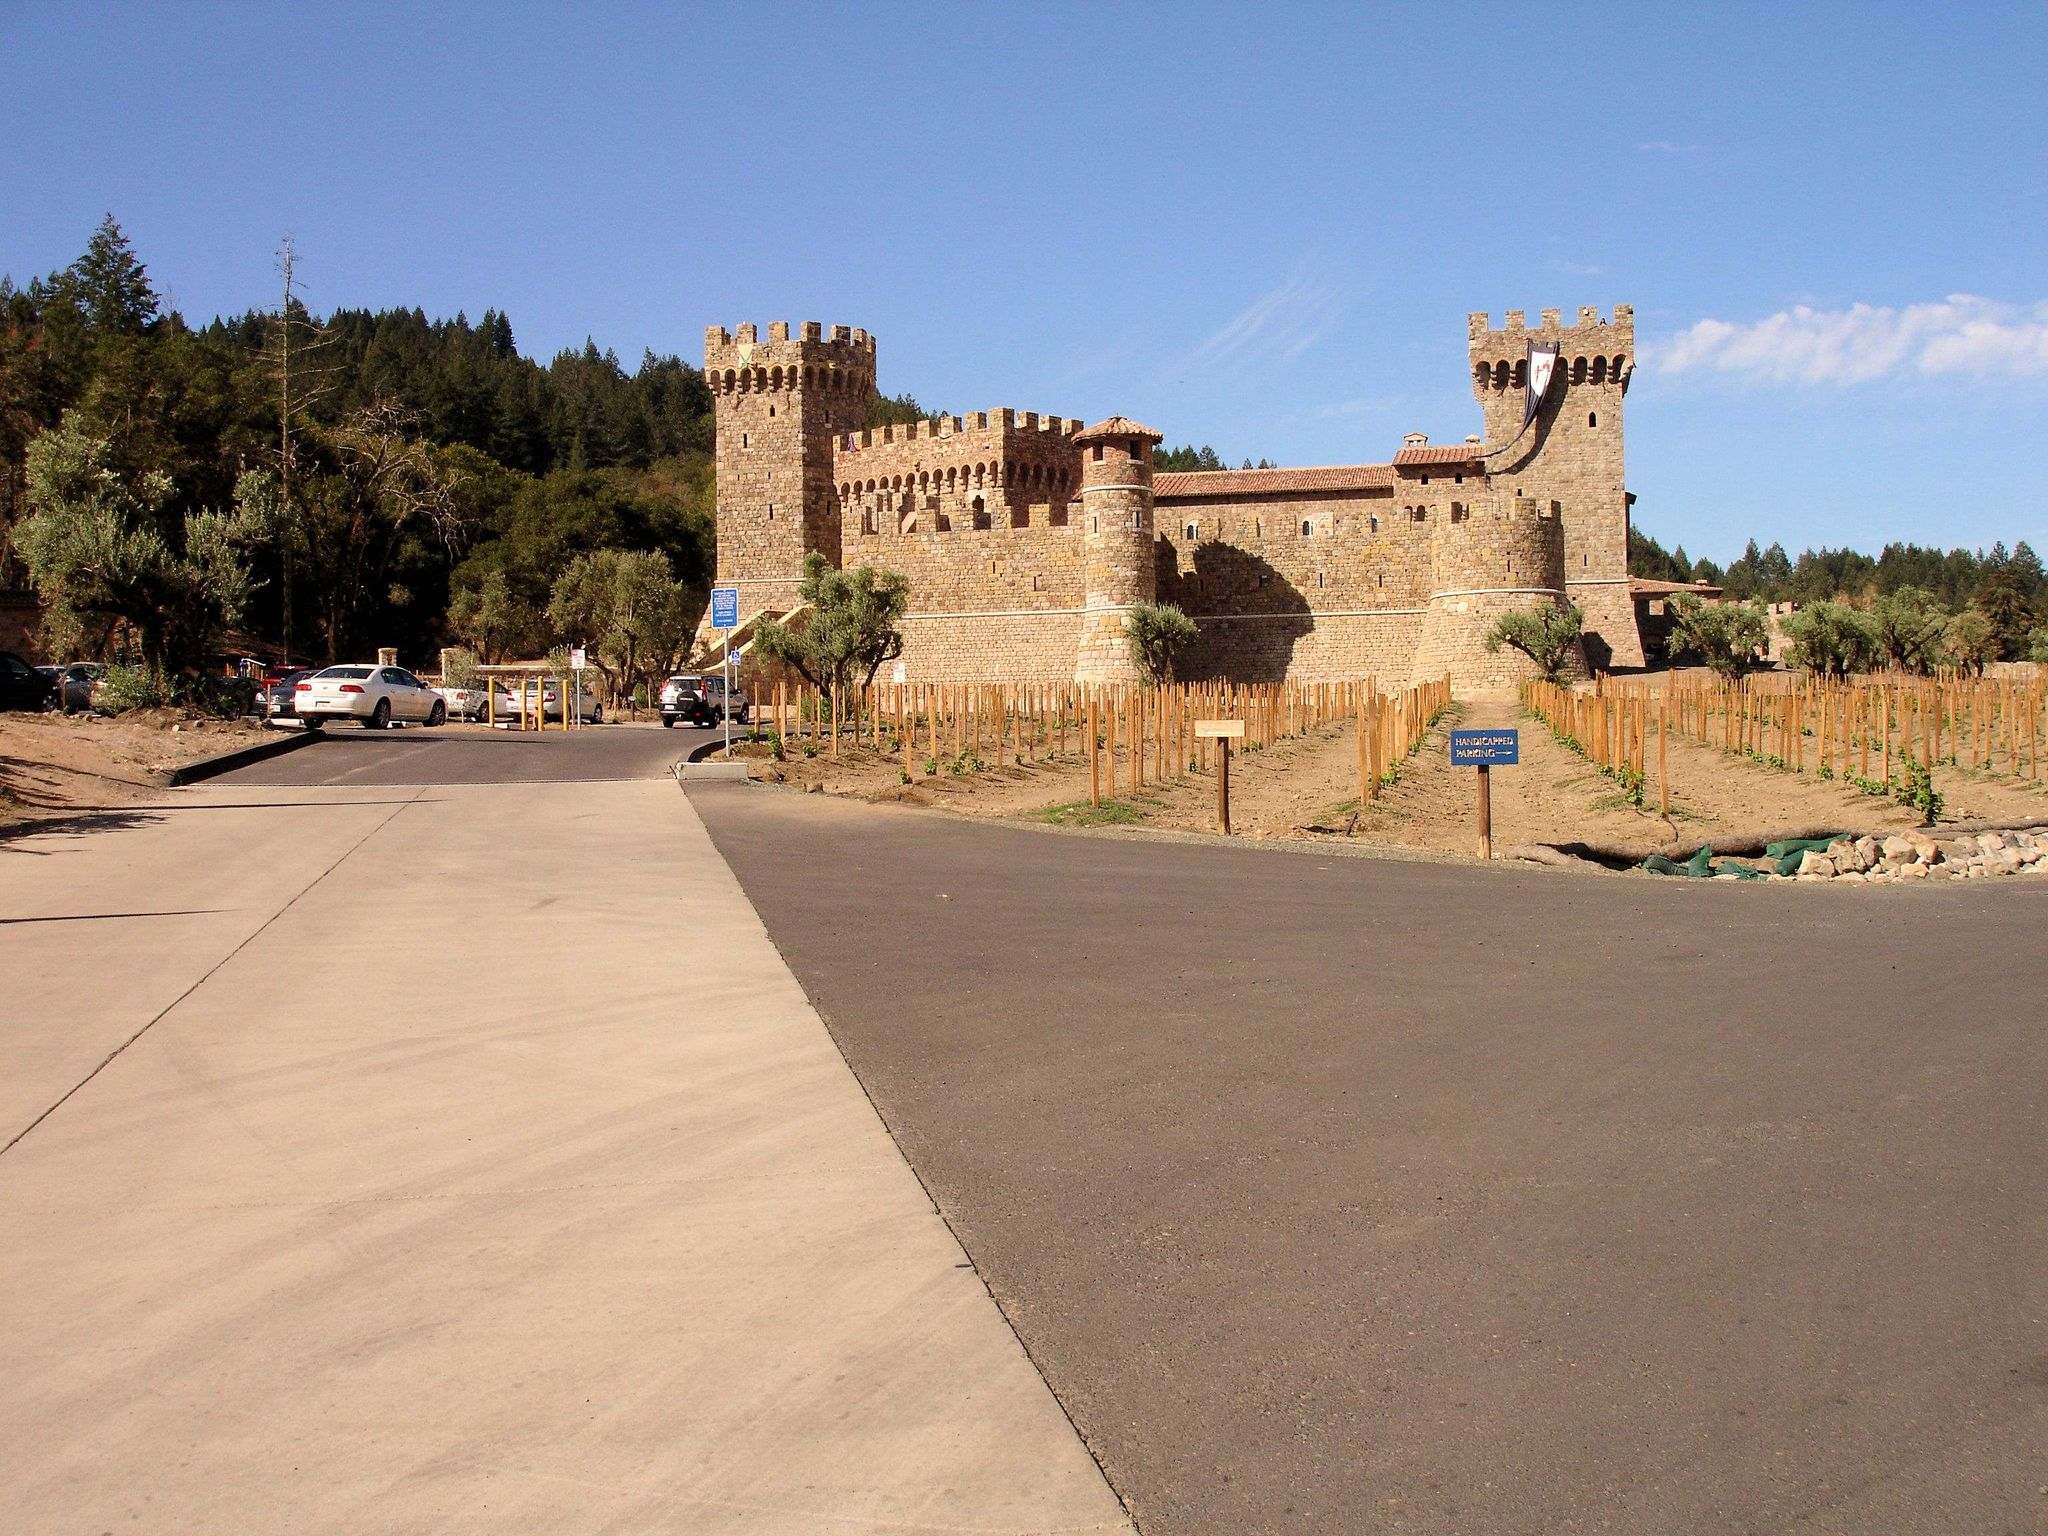 castello di amorosa11 Castello di Amorosa Winery in Napa Valley, California